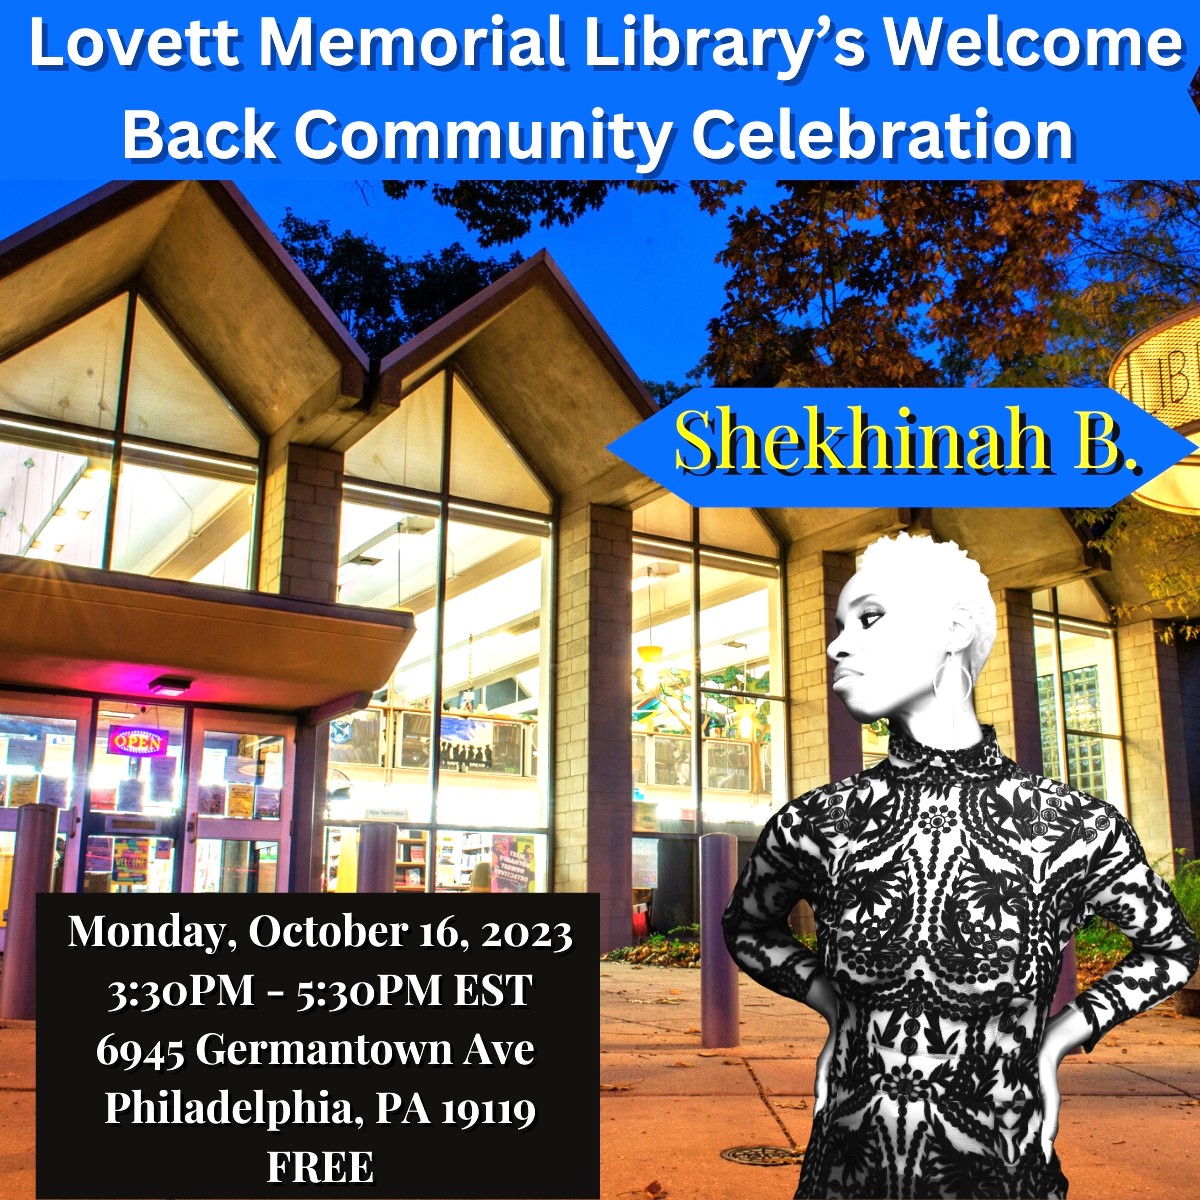 Lovett Memorial Library’s Welcome Back Community Celebration Event